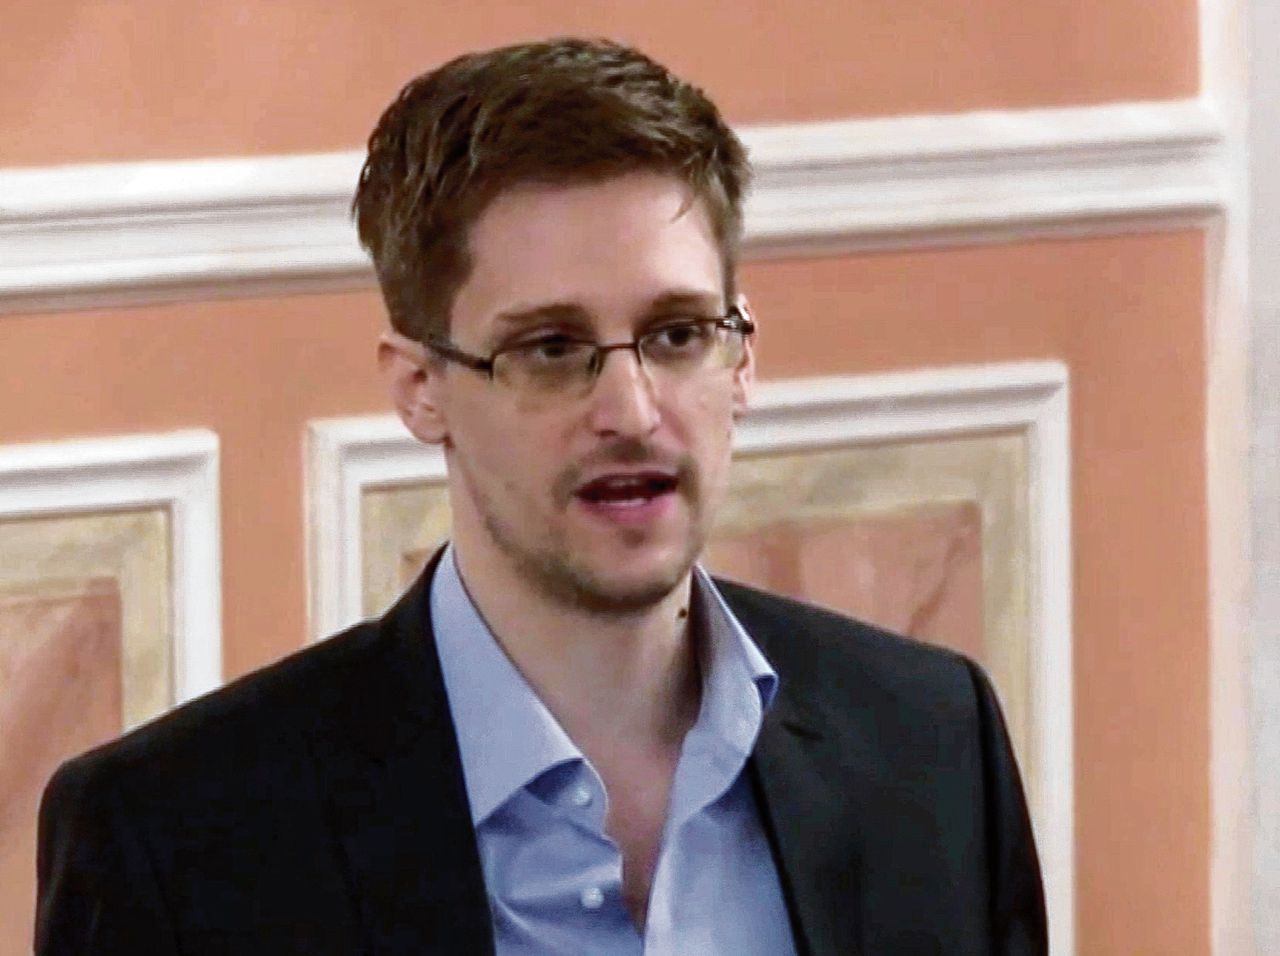 Klokkenluider Edward Snowden.